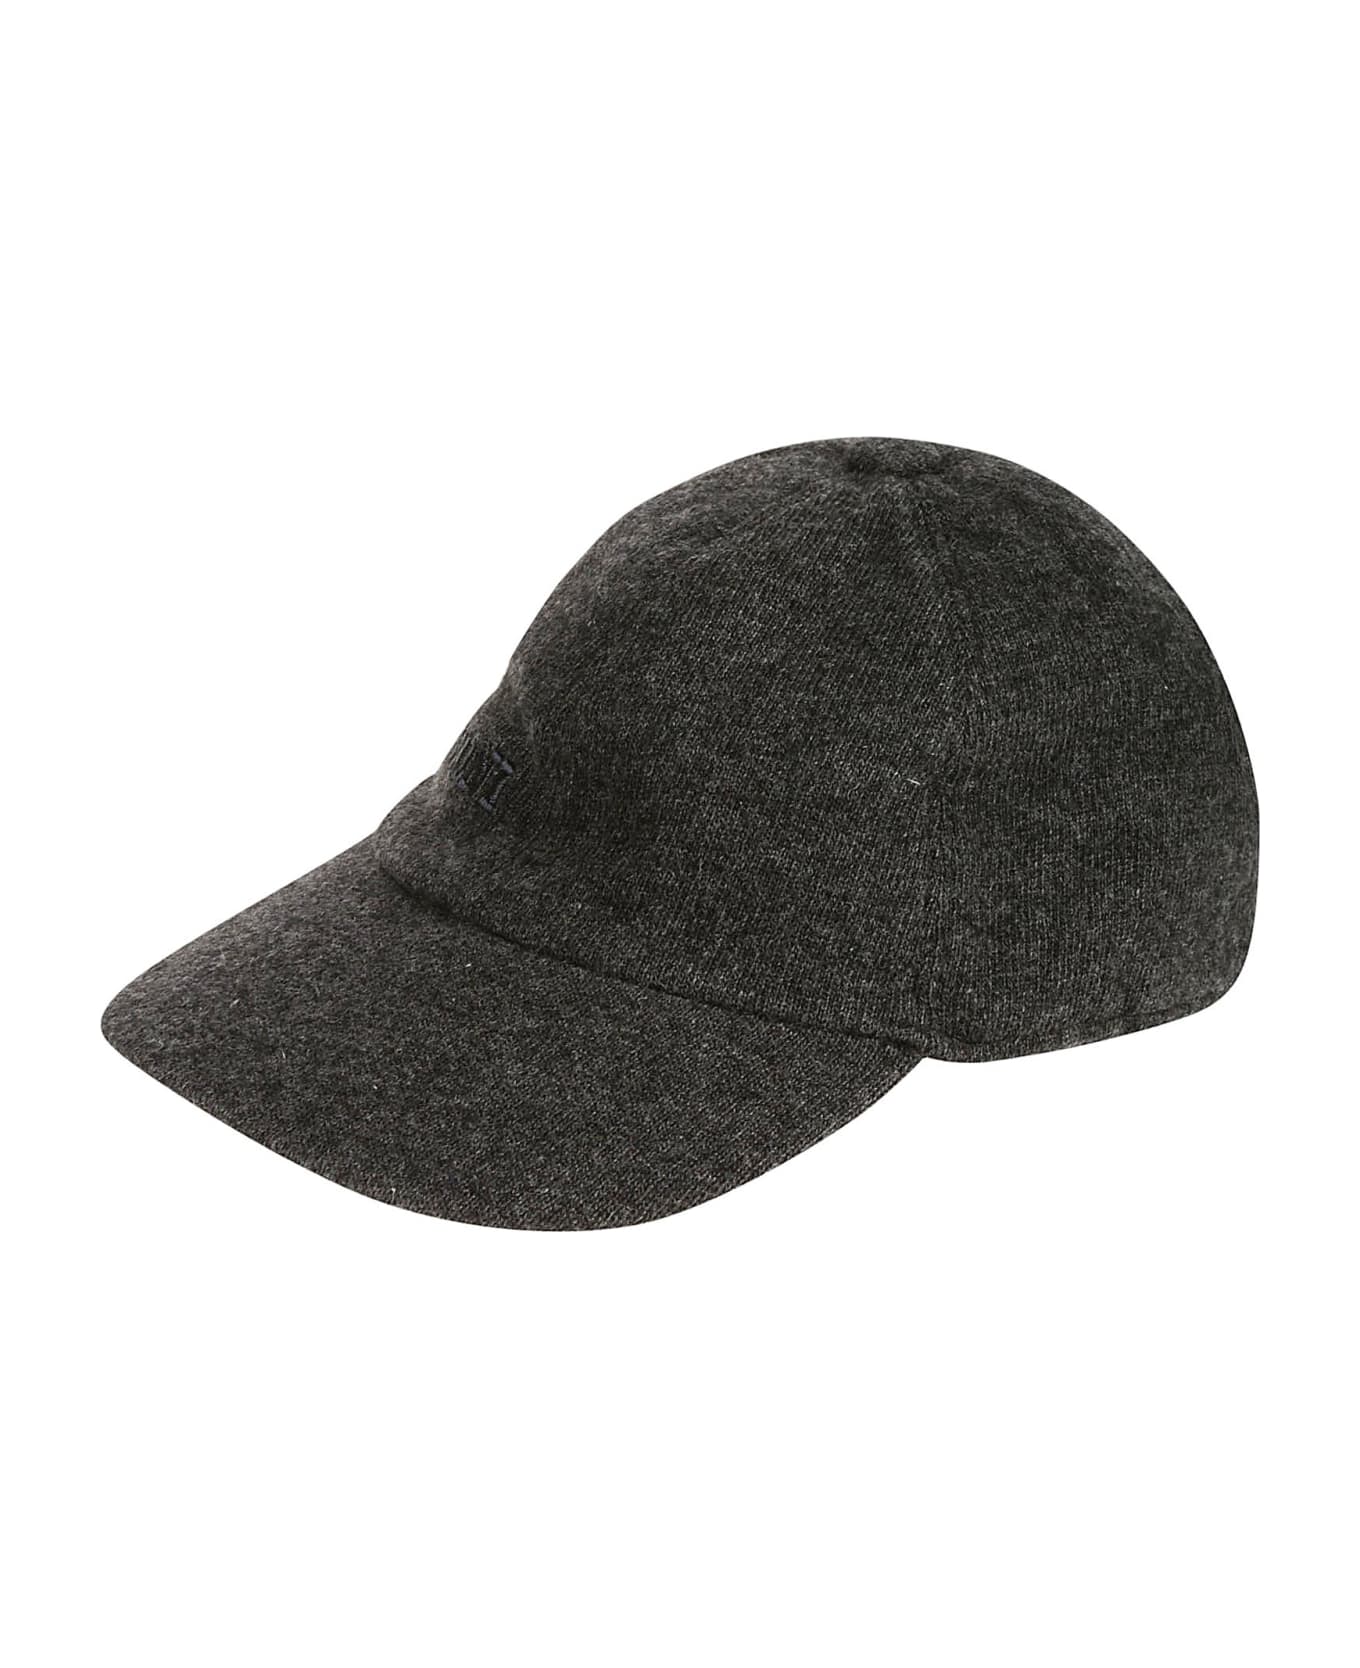 Missoni Hat